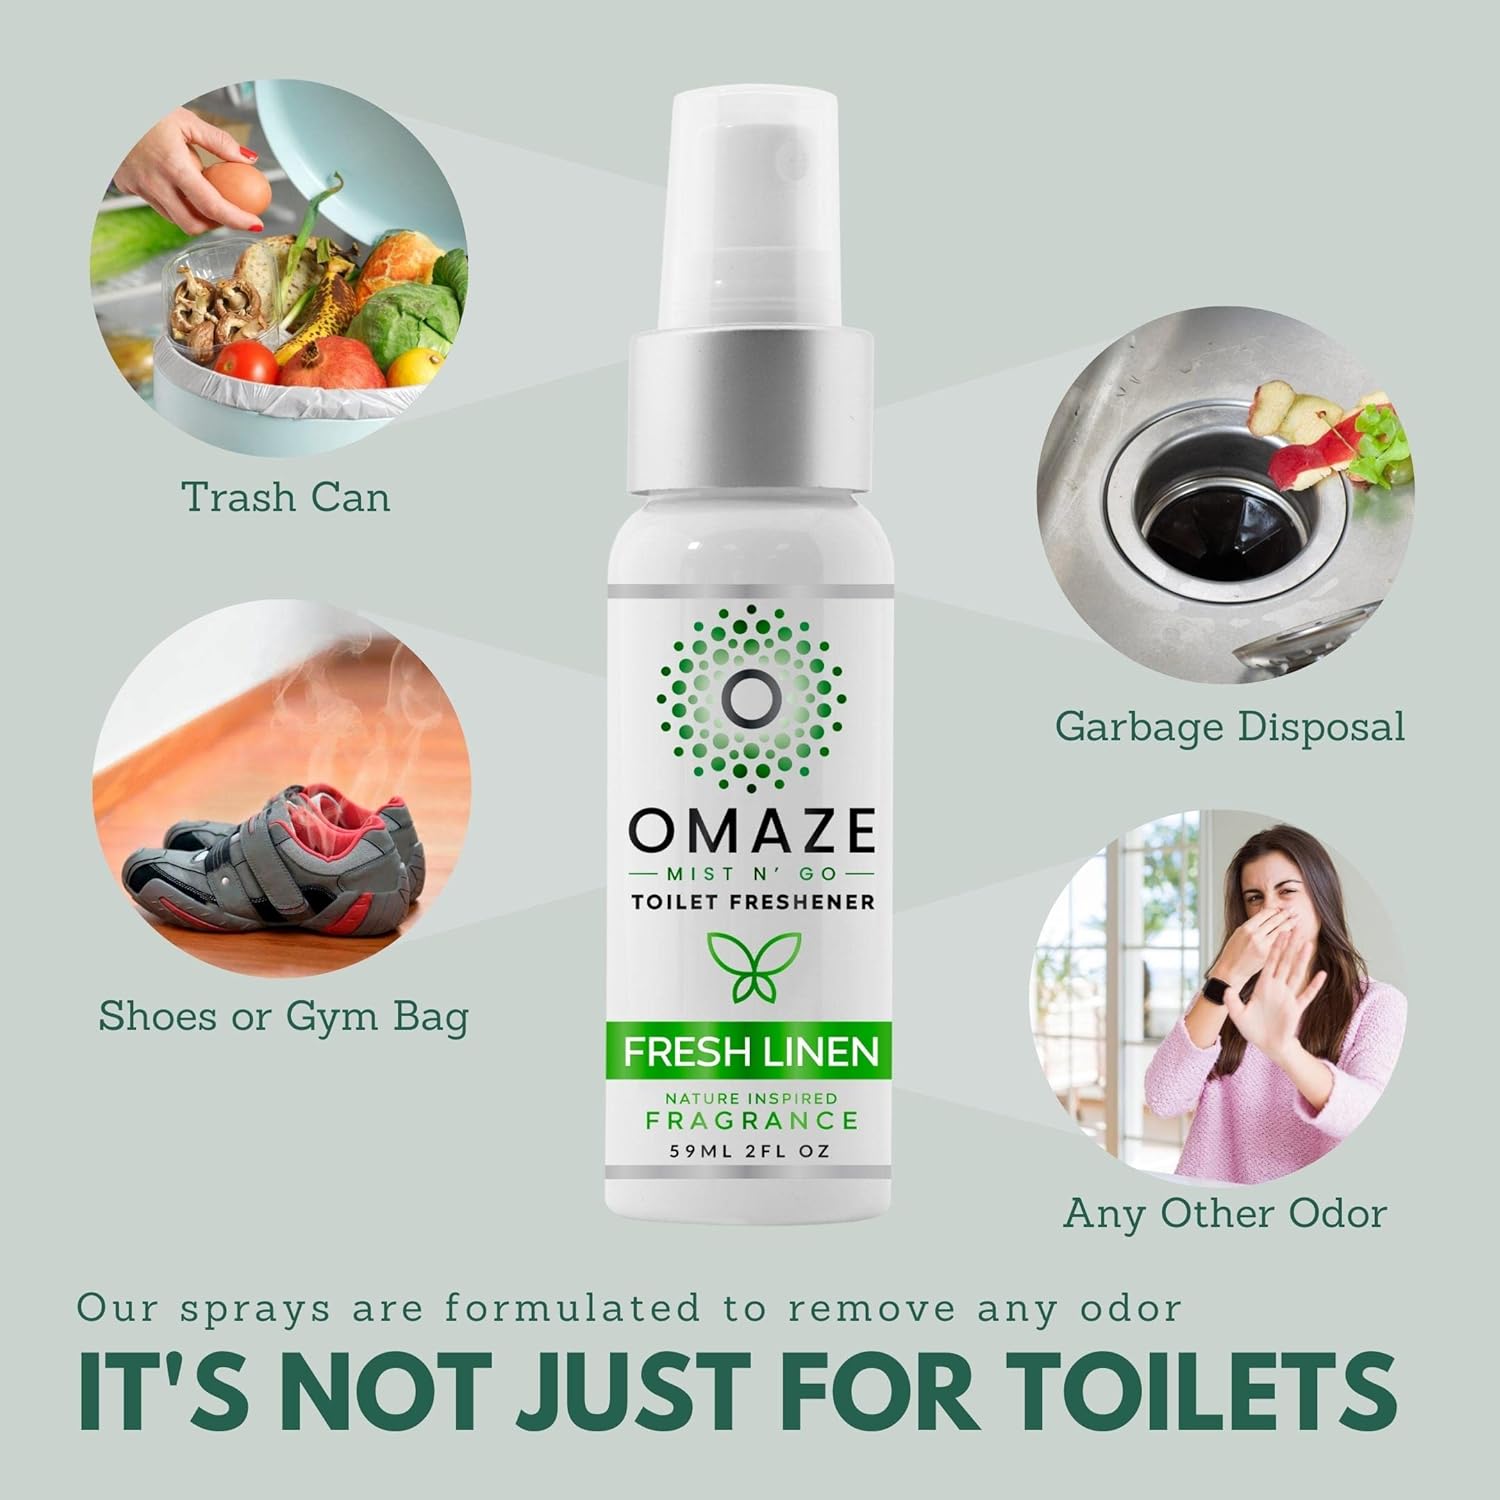 OMAZE Mist N Go Toilet Freshener, Fresh Linen Scent 2Fl Oz (2 Pack) | Odor Neutralizer for Toilets : Health & Household